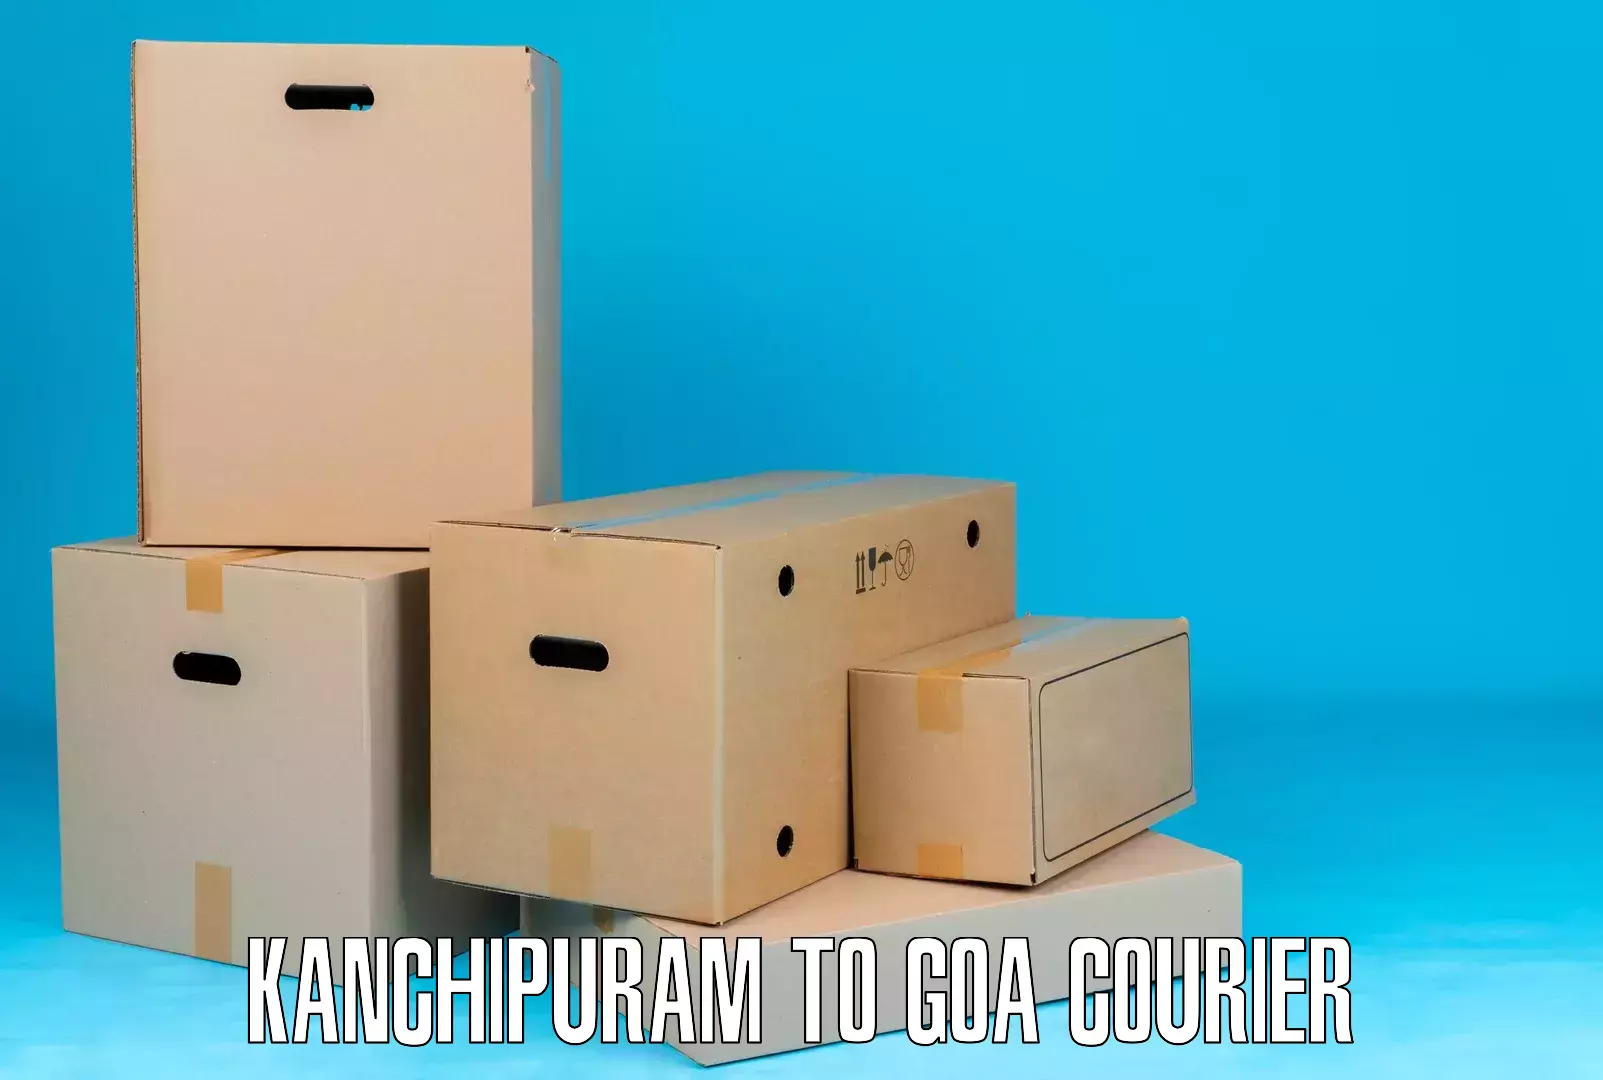 Door-to-door freight service Kanchipuram to Goa